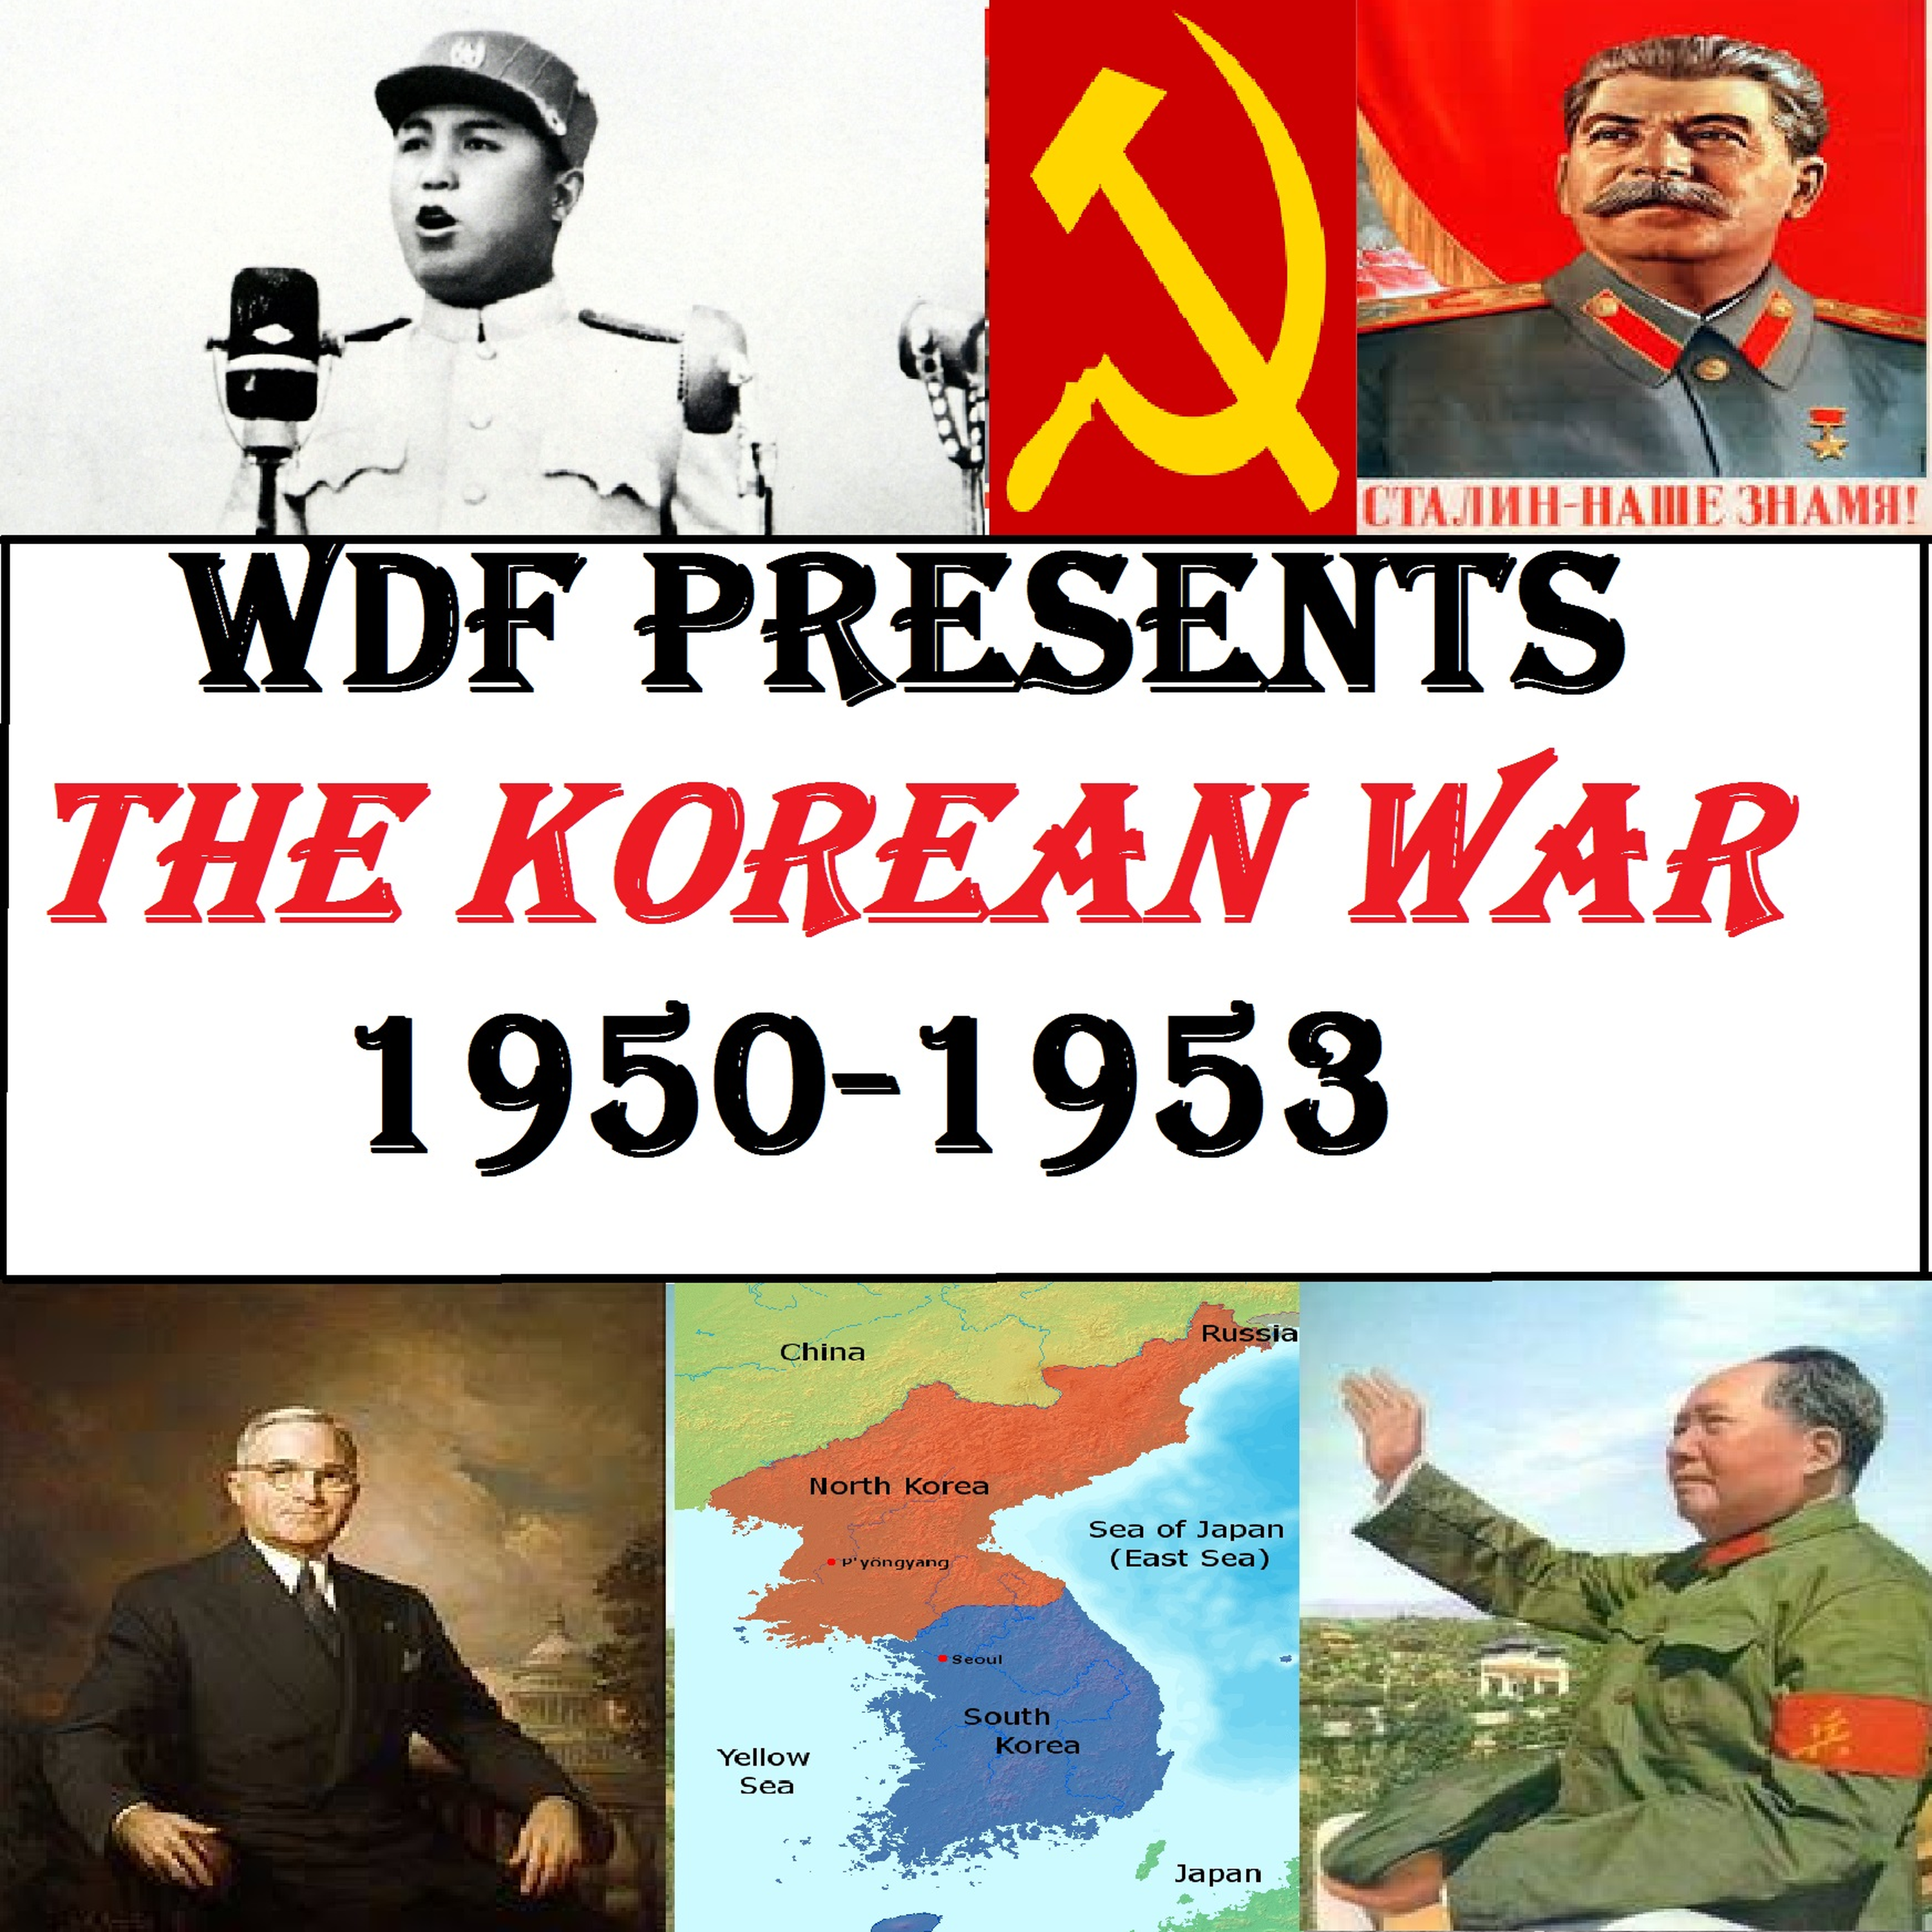 Korean War #37: Burning Chinese